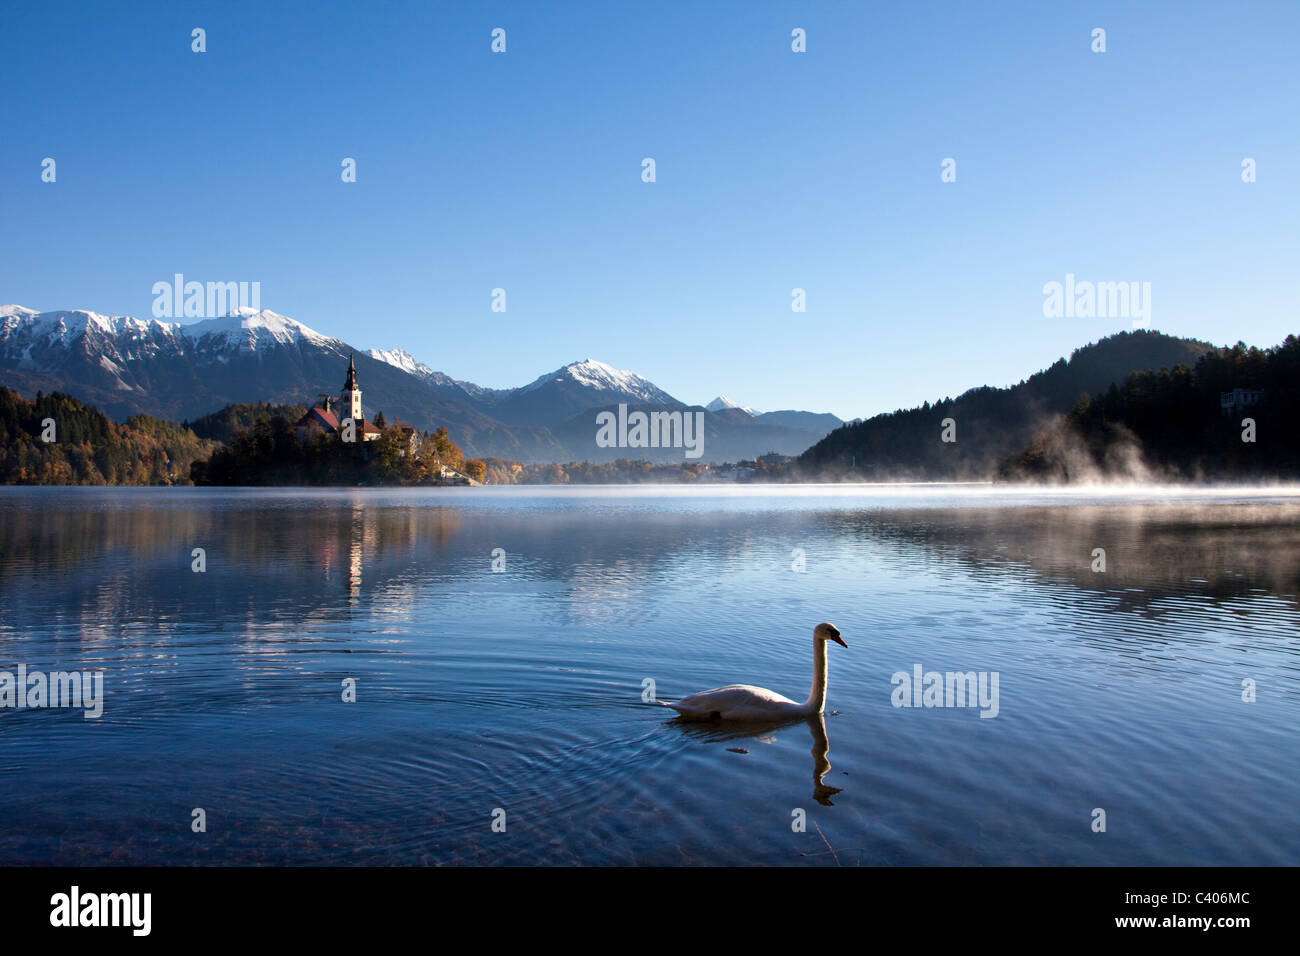 La Slovenia, Europa, Bled, lago, autunno, chiesa, montagne, swan Foto Stock